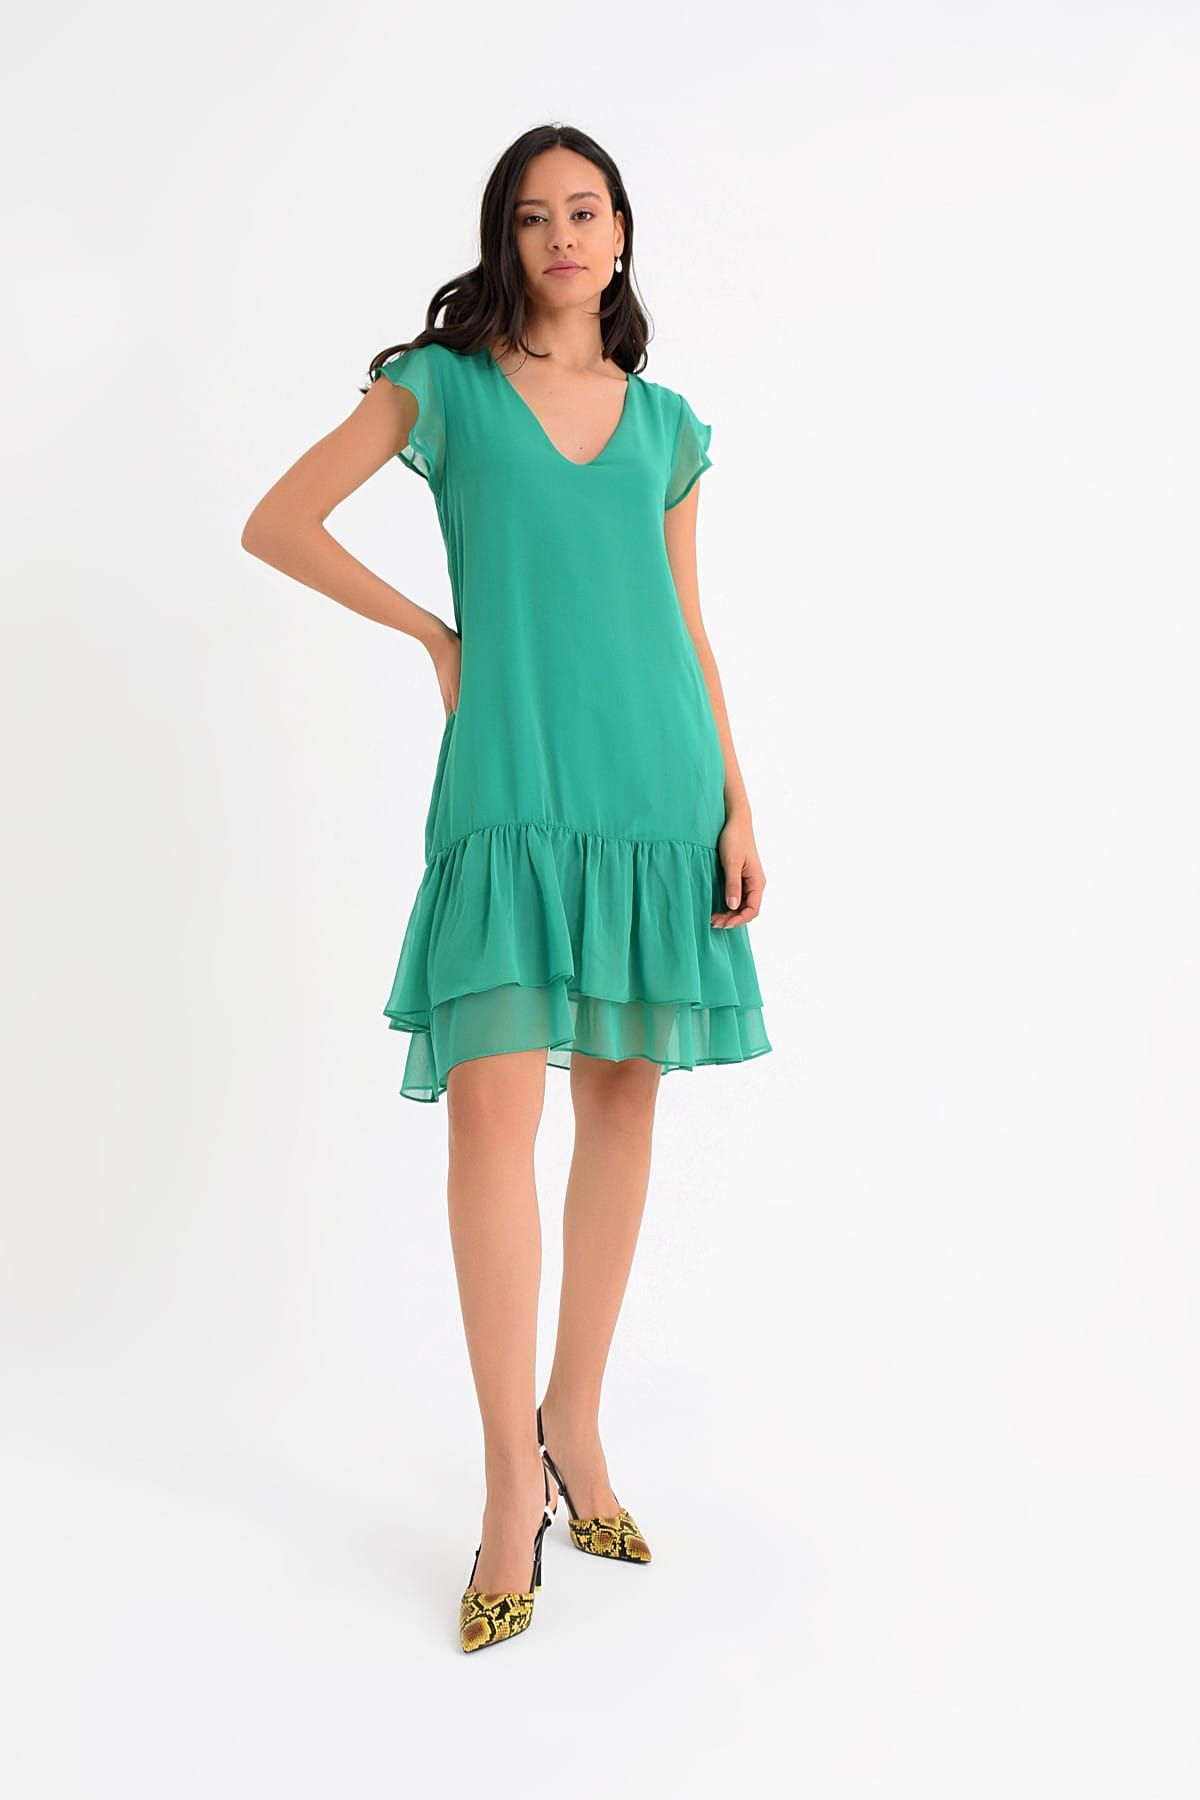 Hanna's Kadın Yeşil Kolu Volan Detaylı V Yakalı Örme Astarlı Eteği Volan Detaylı Dokuma Elbise Hn1533